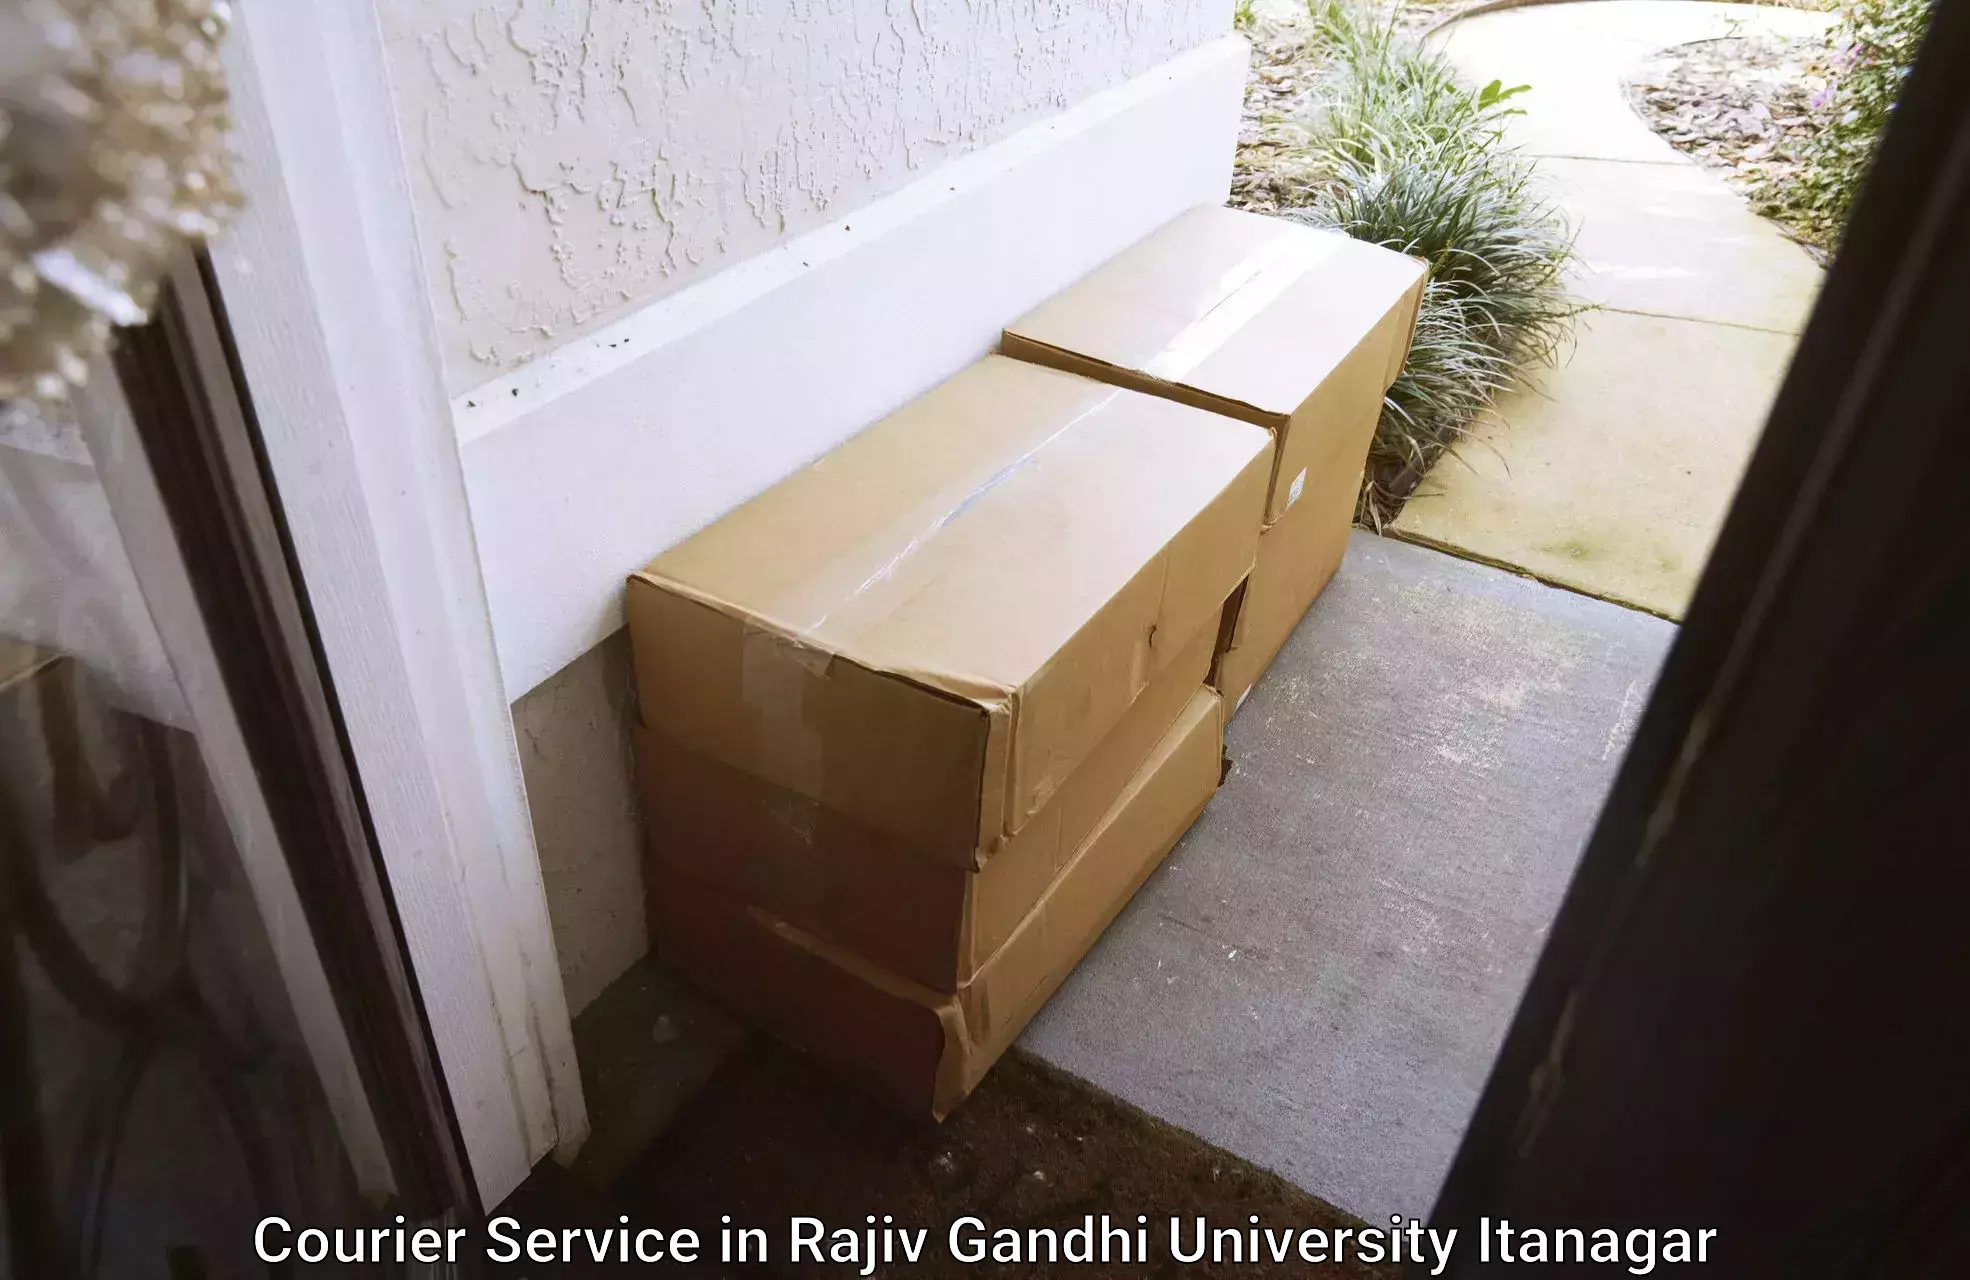 Customer-centric shipping in Rajiv Gandhi University Itanagar